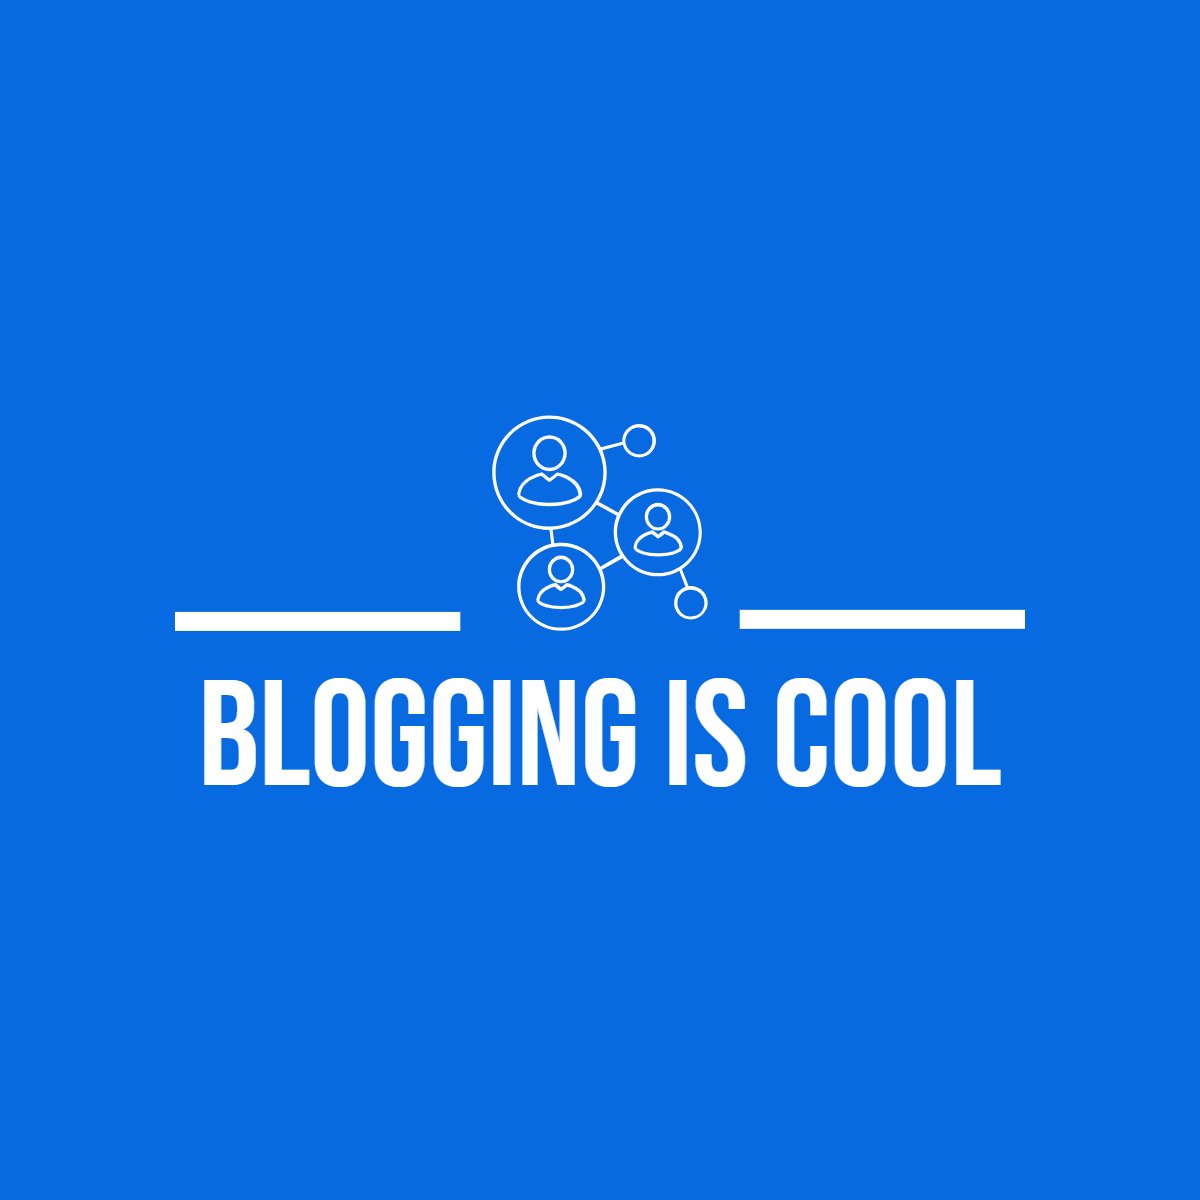 bloggingiscool.com using Instagram to get traffic